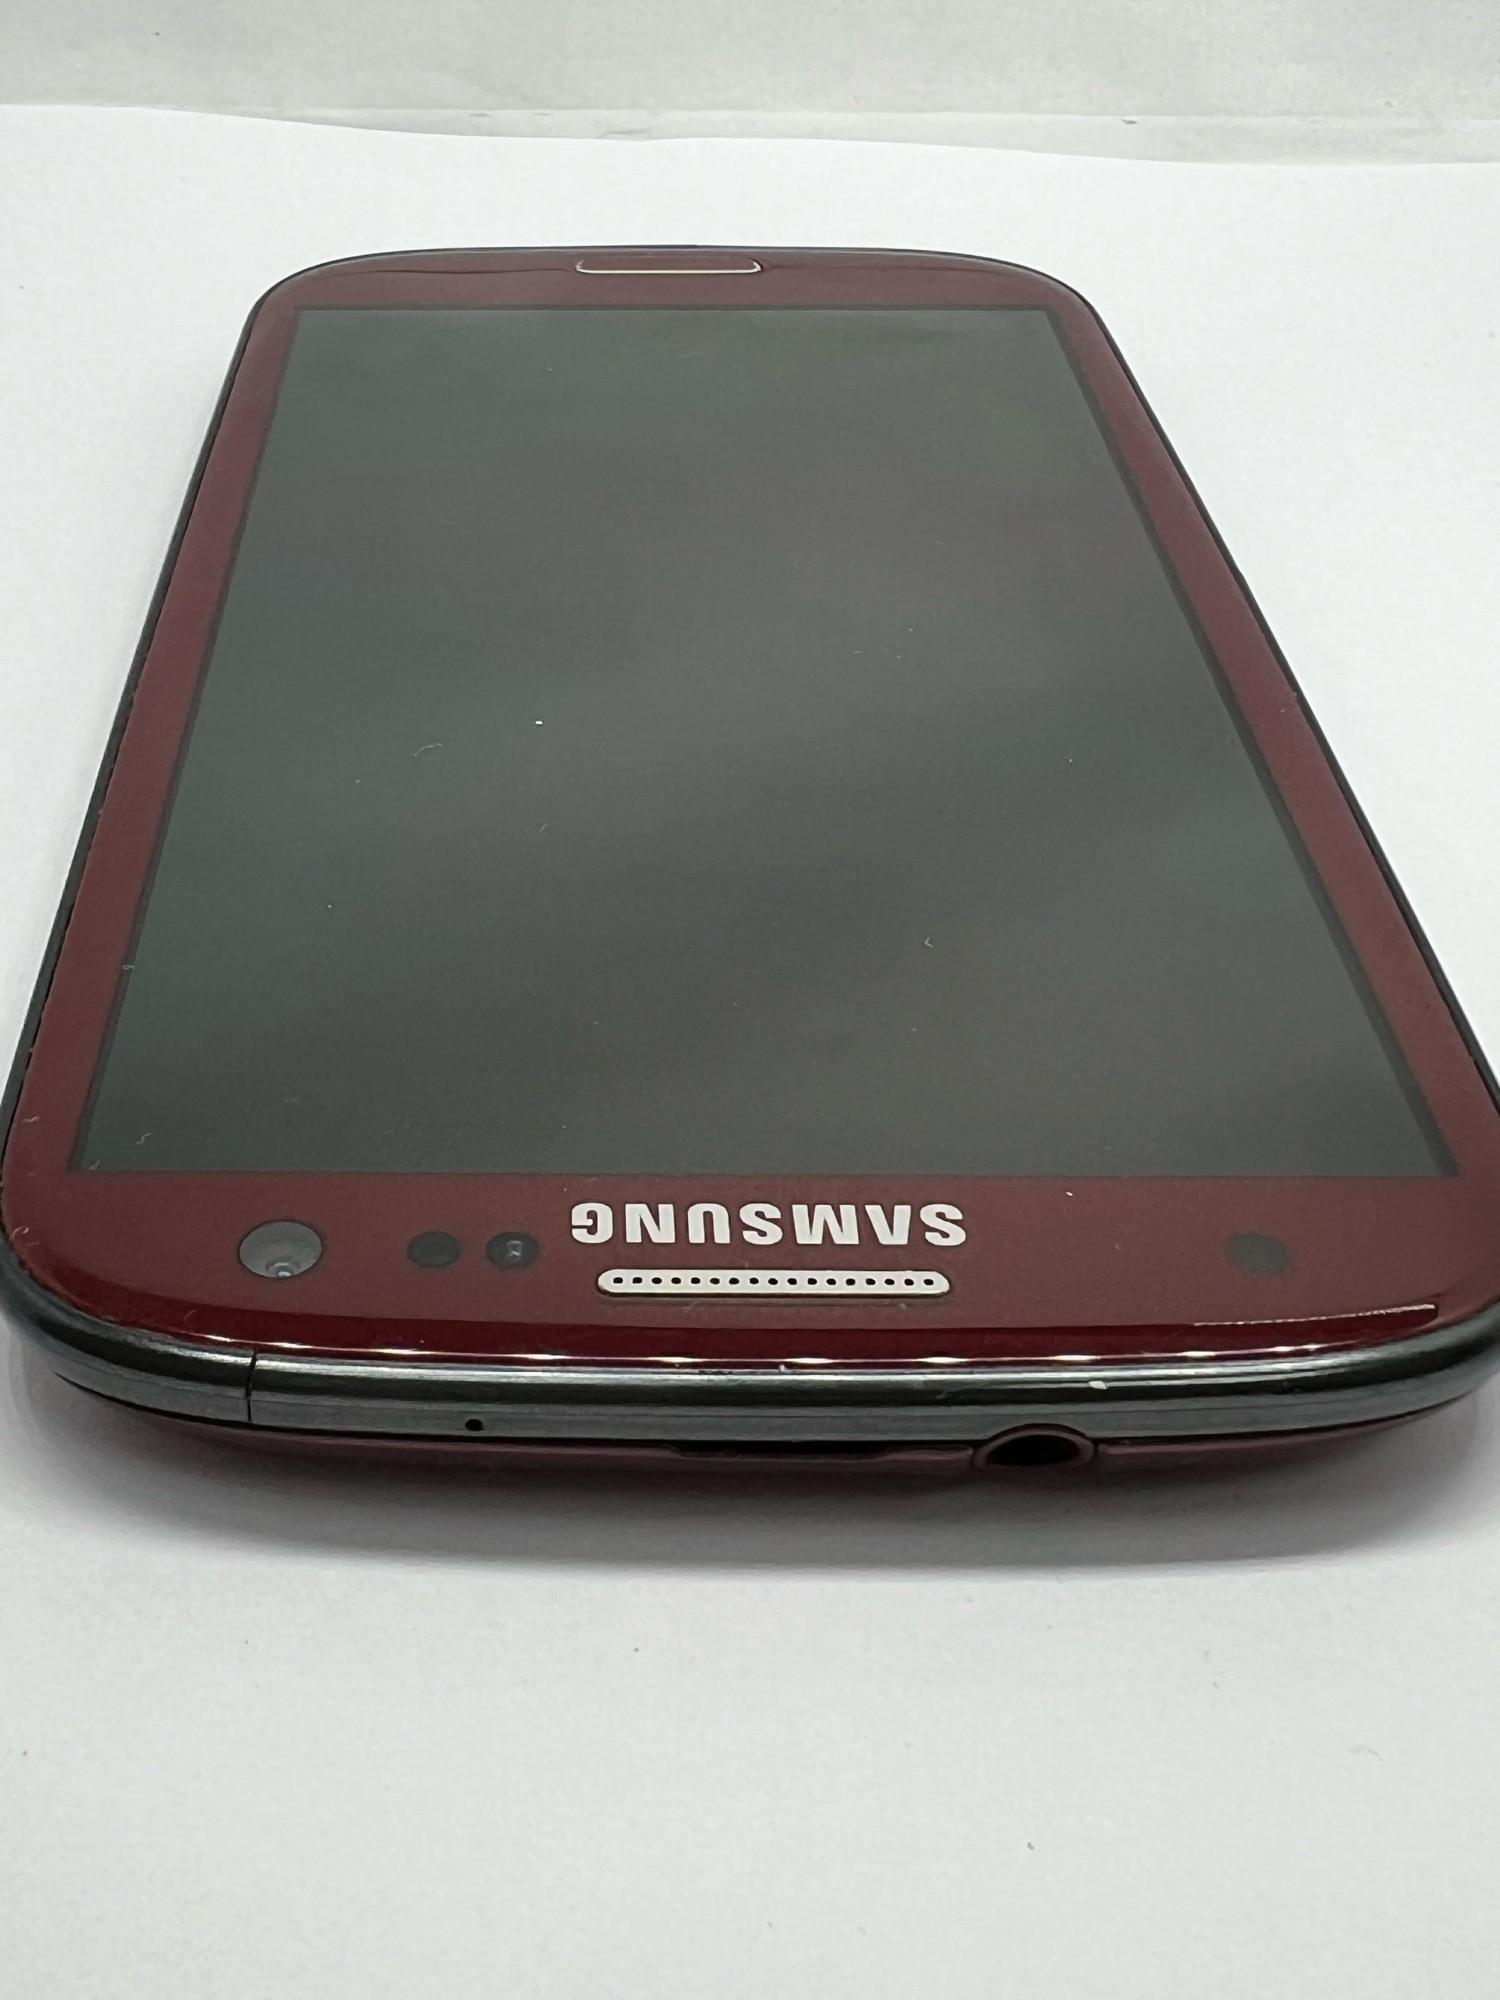 Samsung Galaxy S3 (GT-I9300) 1/16Gb 2